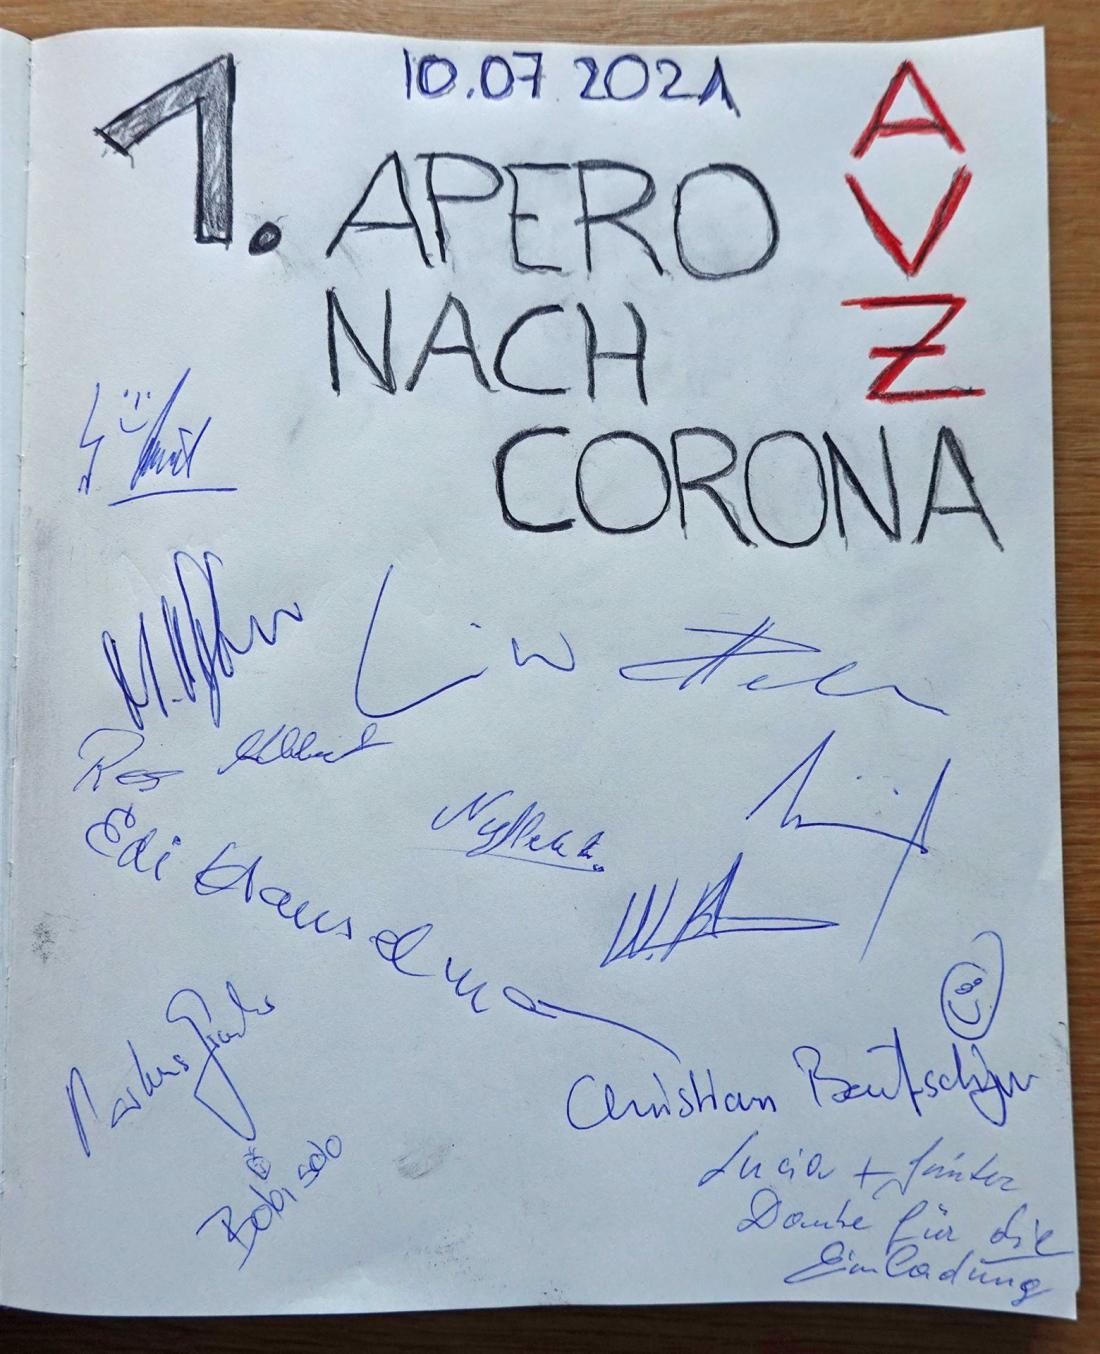 Gästebuch am ersten Apéro des Artillerie-Vereins Zofingen nach Corona